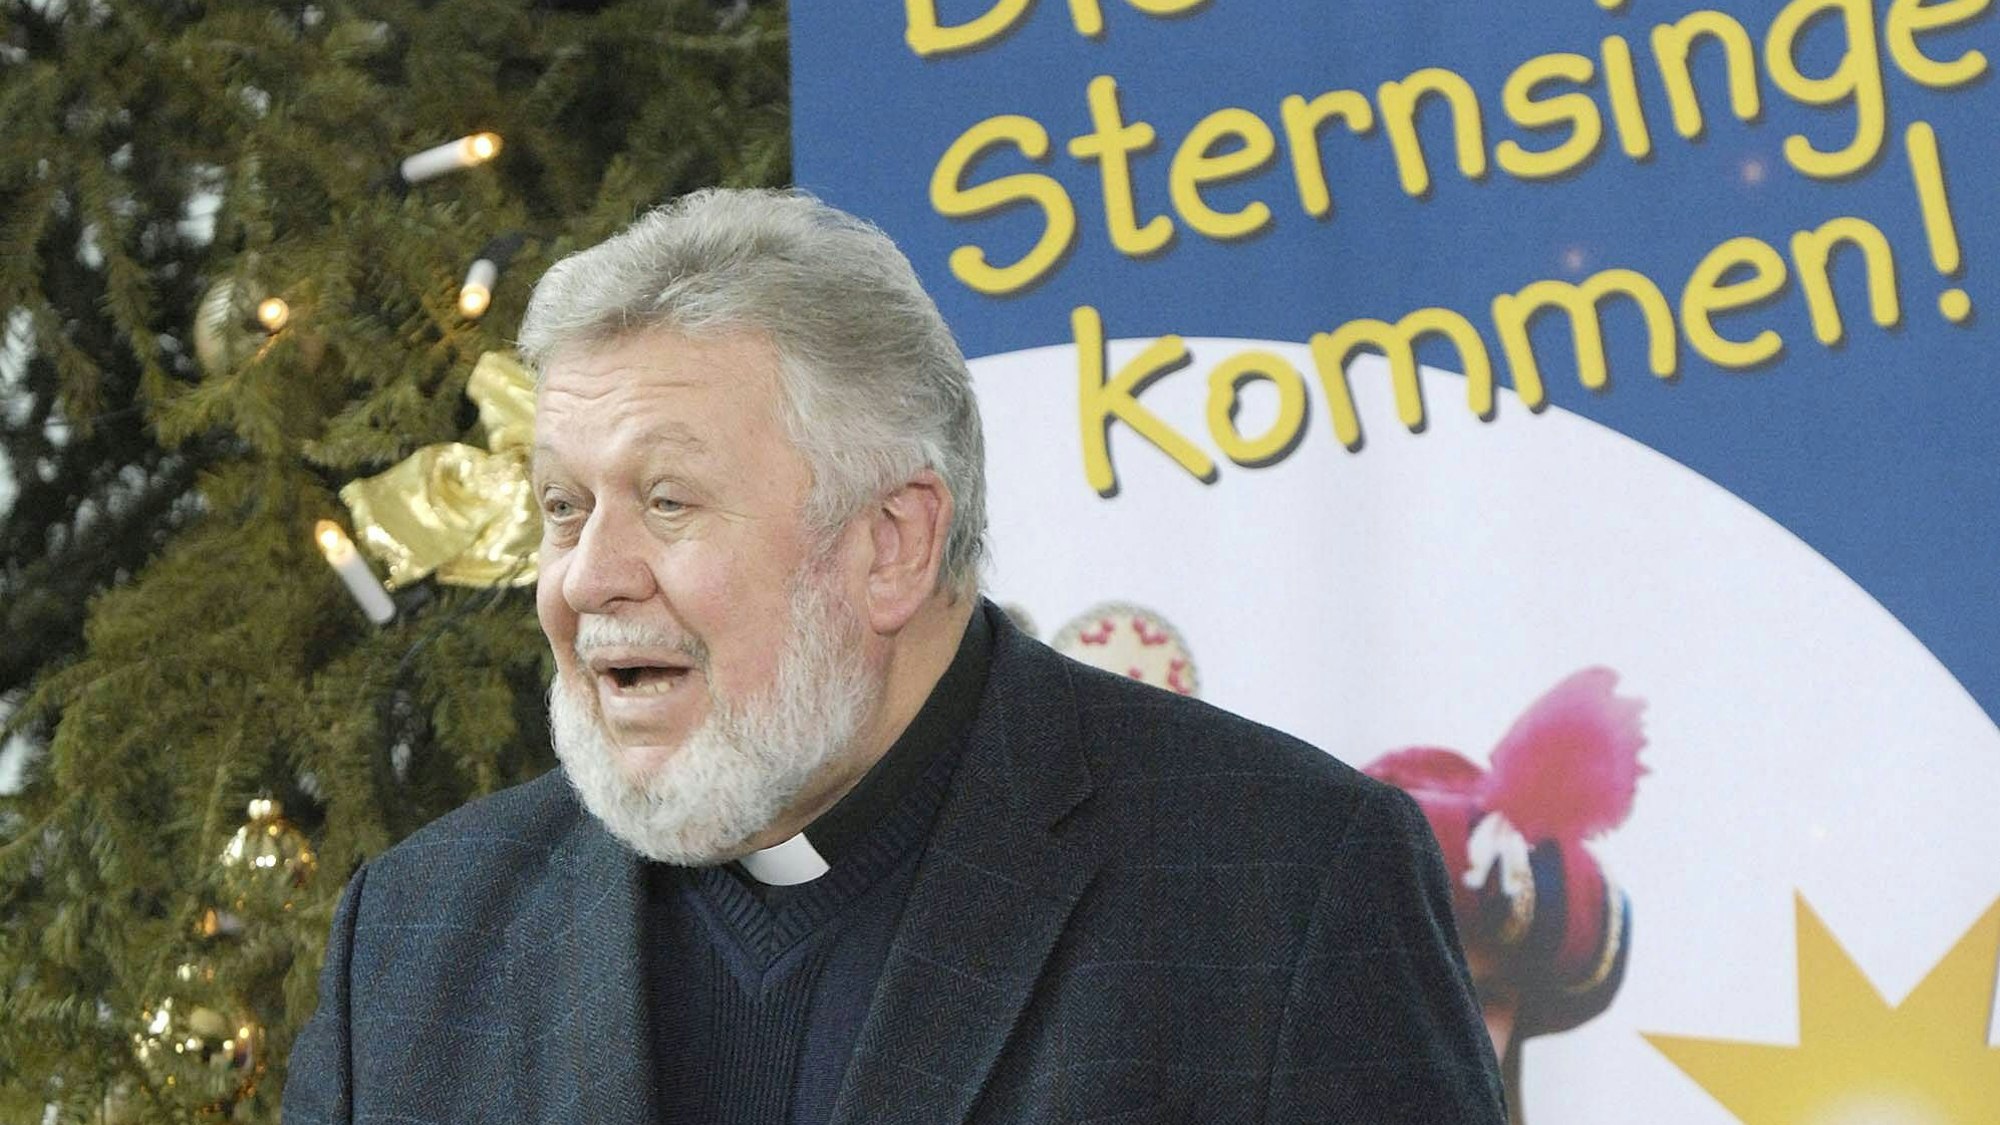 Winfried Pilz starb 2018. Woelki will von Missbrauchsvorwürfen gegen den früheren „Sternsinger“-Präsidenten nichts mitbekommen haben.